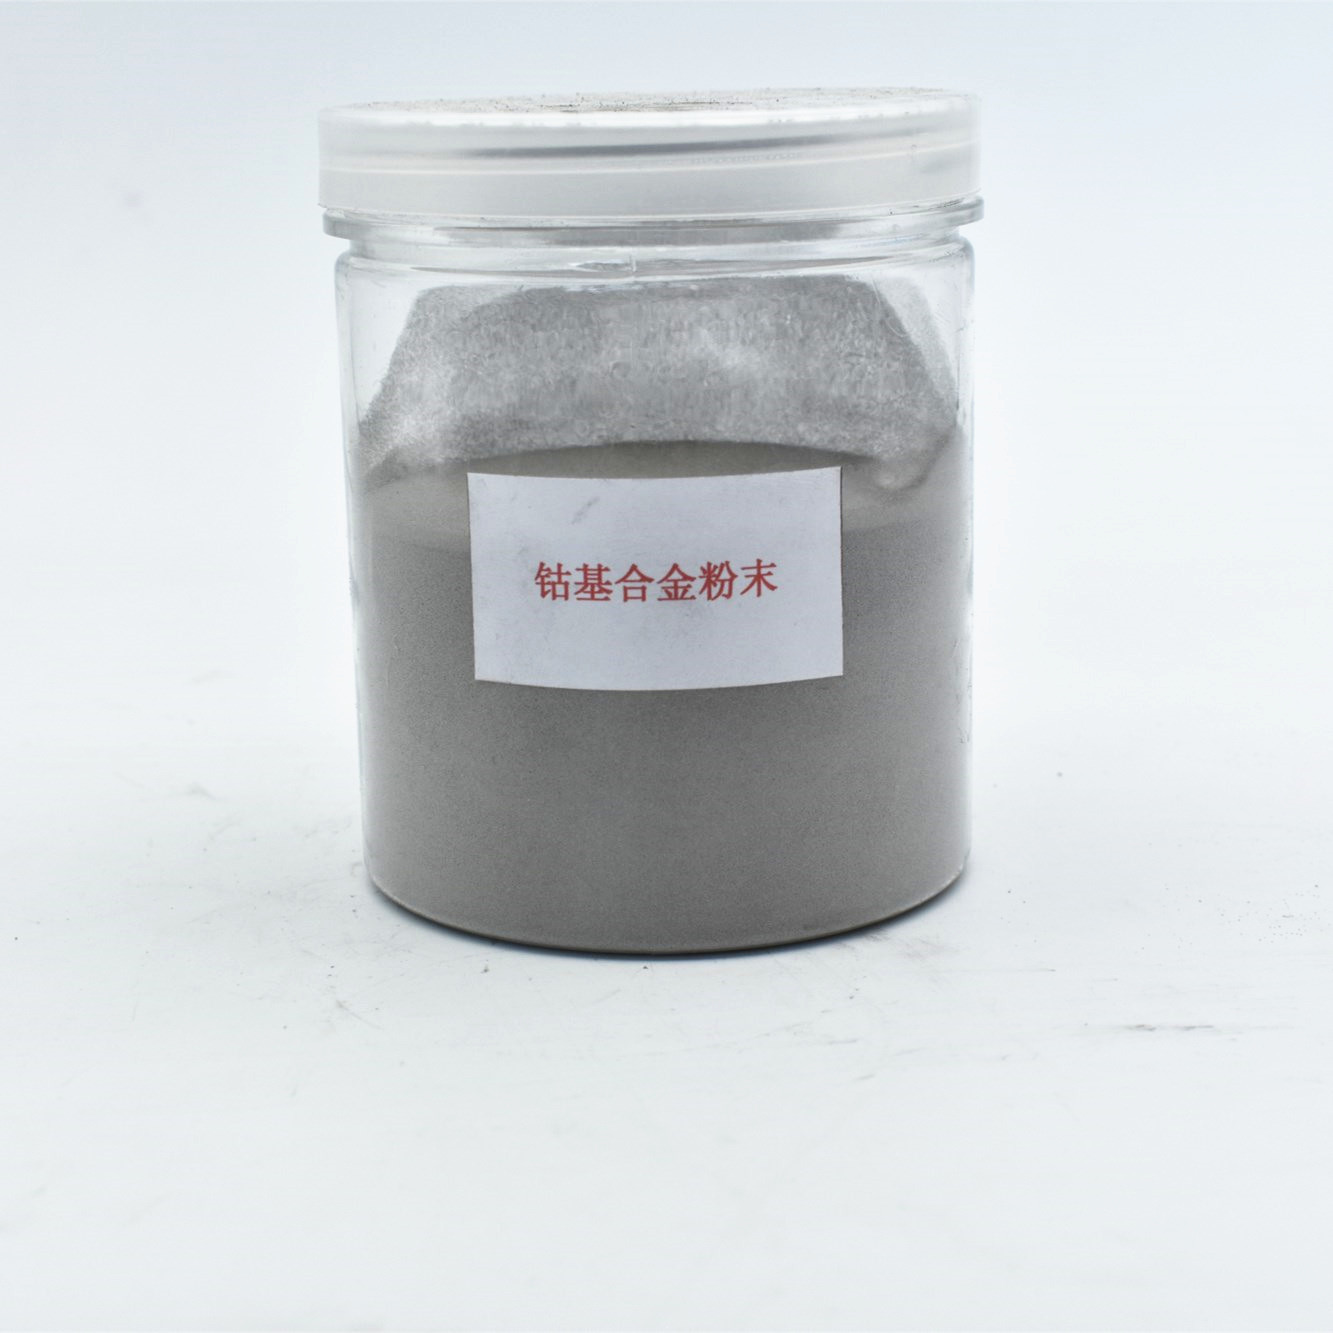 Co2钴基合金粉末 Stellite6钴基合金粉 等离子堆焊专用粉厂家直销|ms